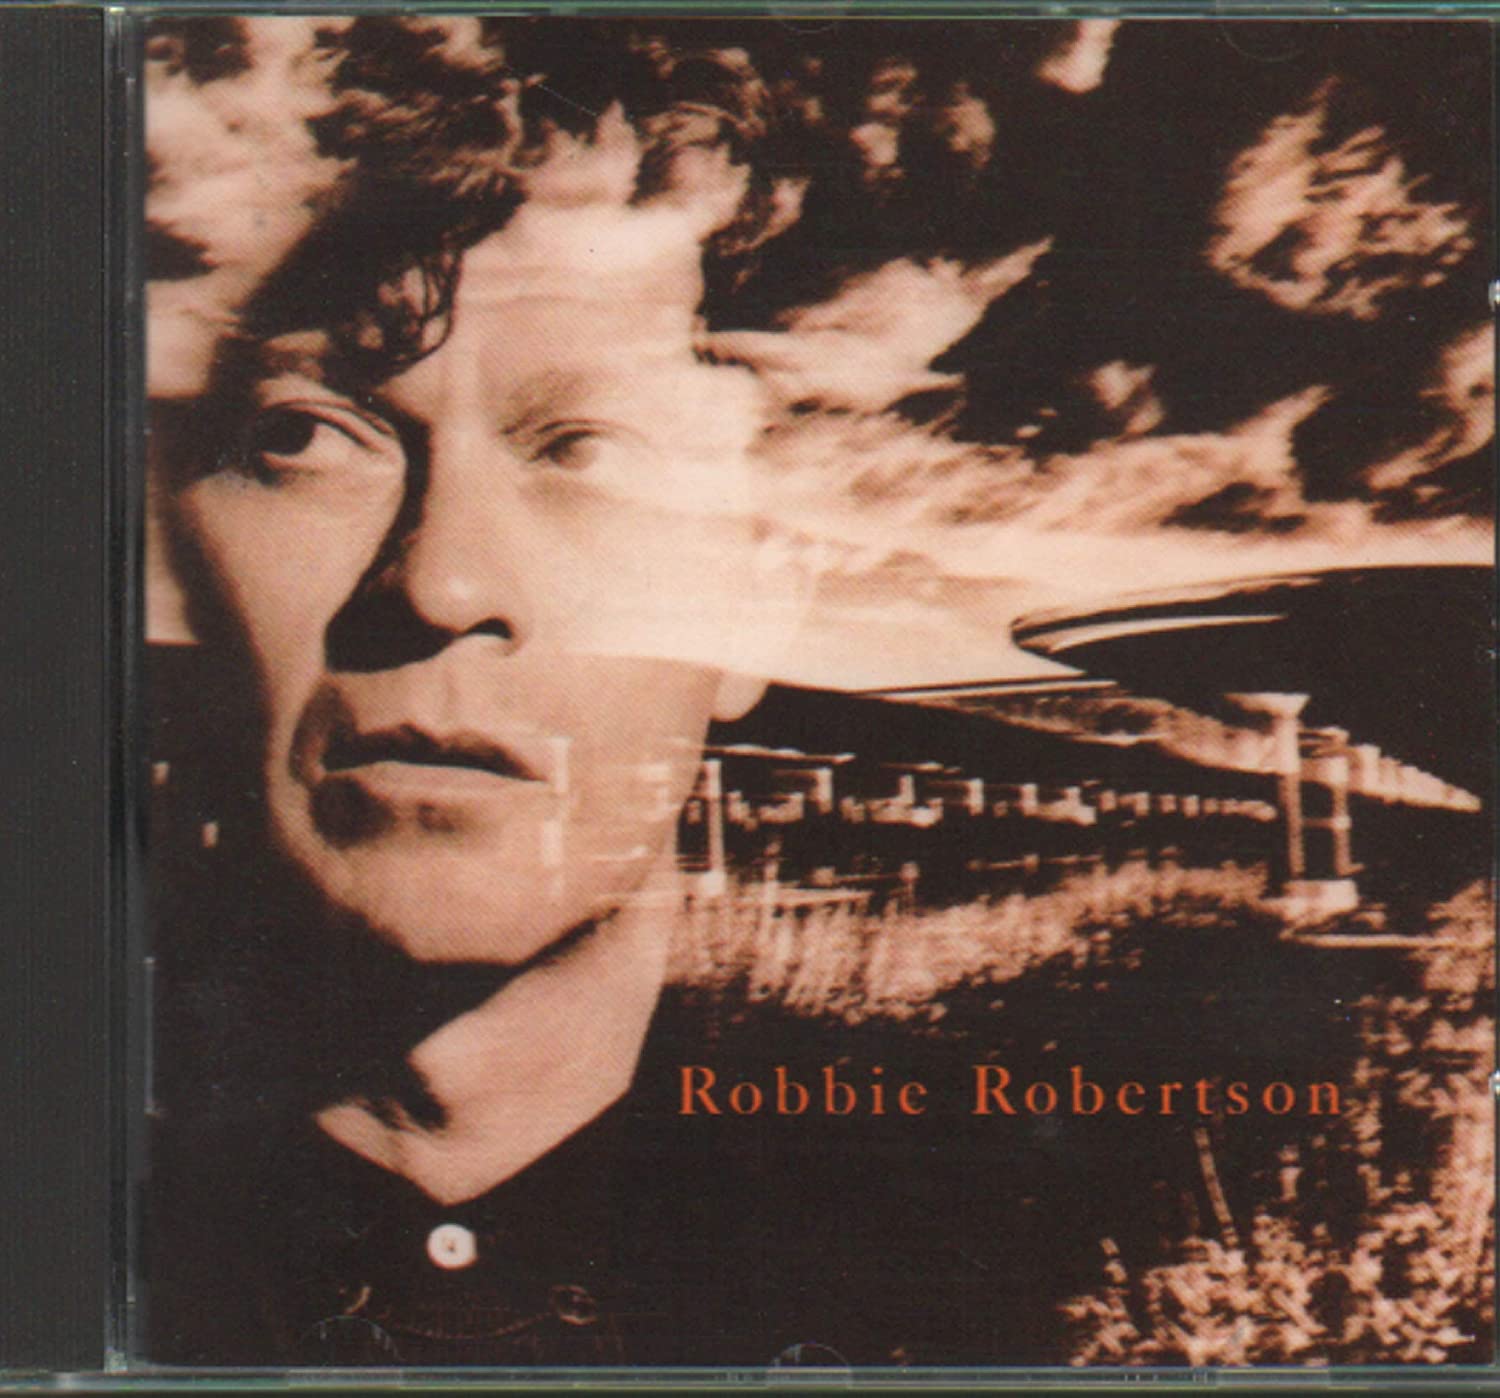 Robbie Robertson- Robbie Robertson - DarksideRecords